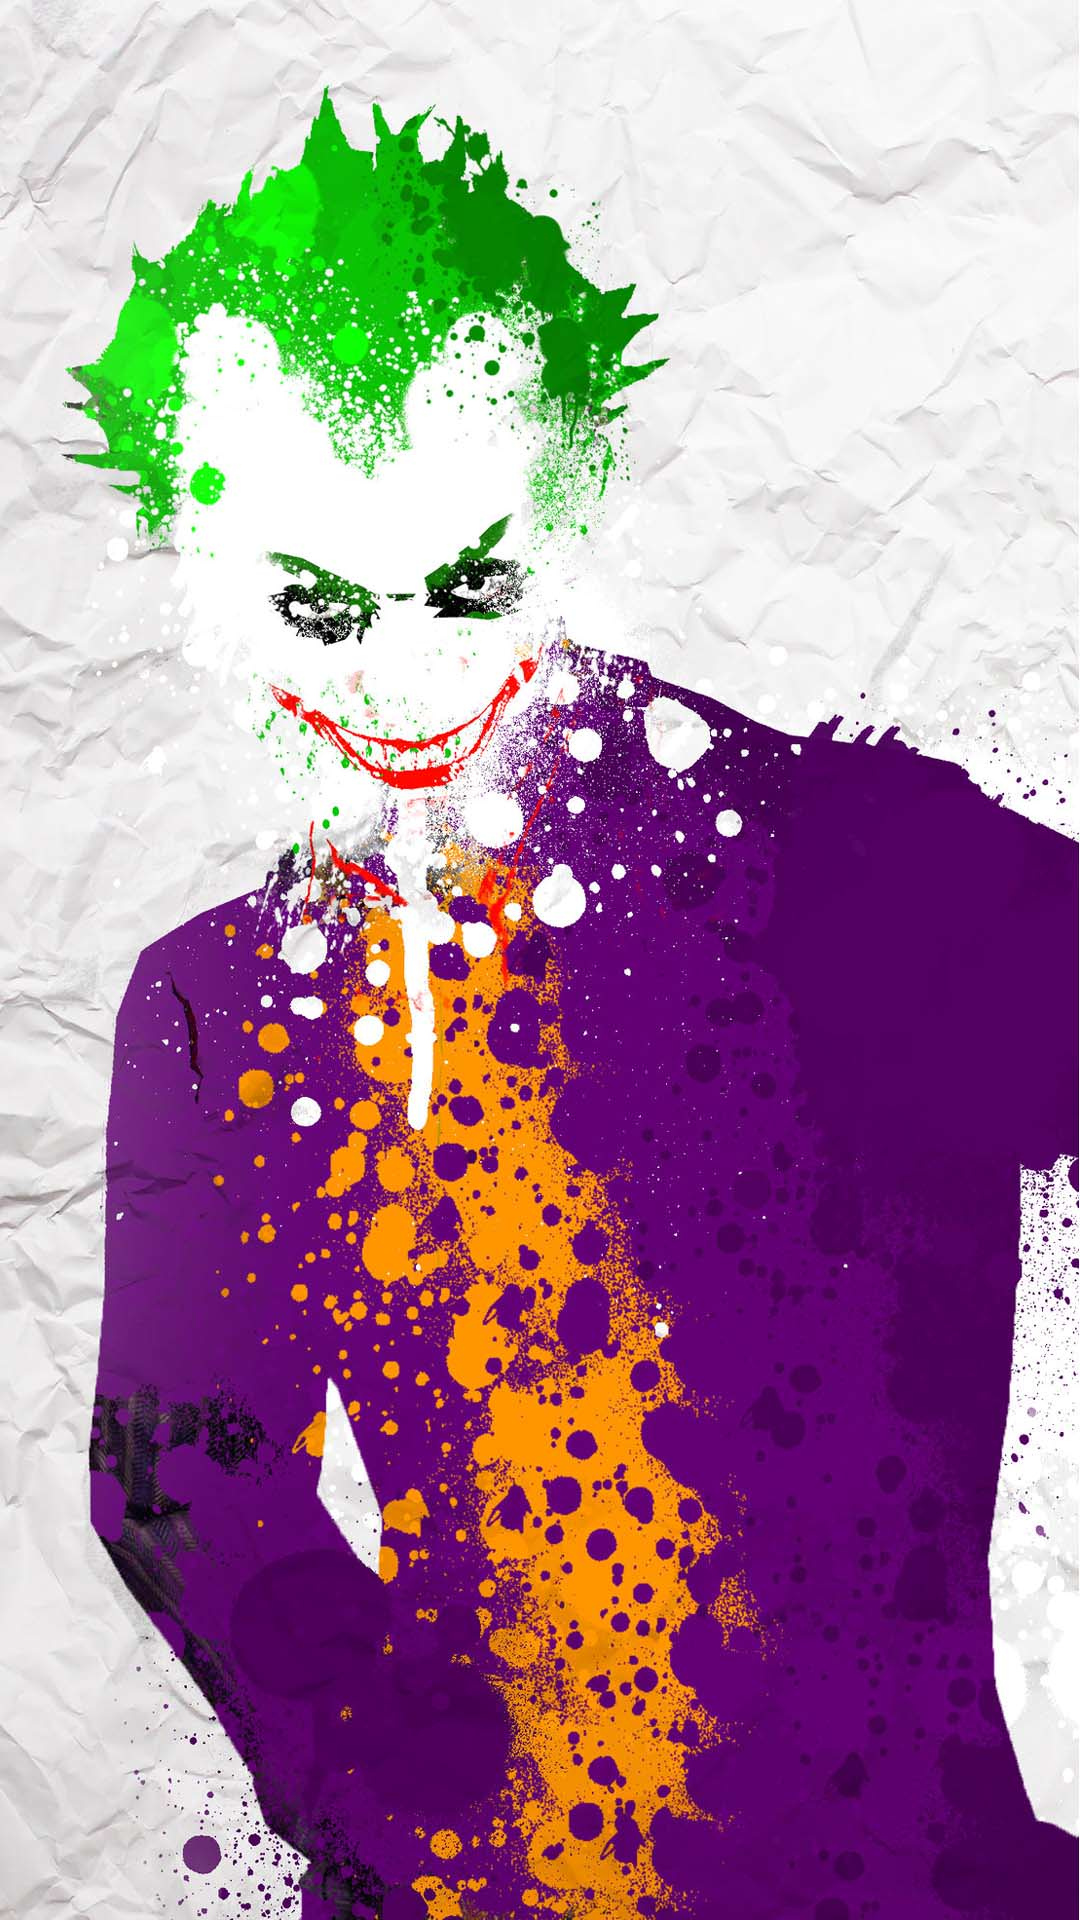 Joker art wallpapers download